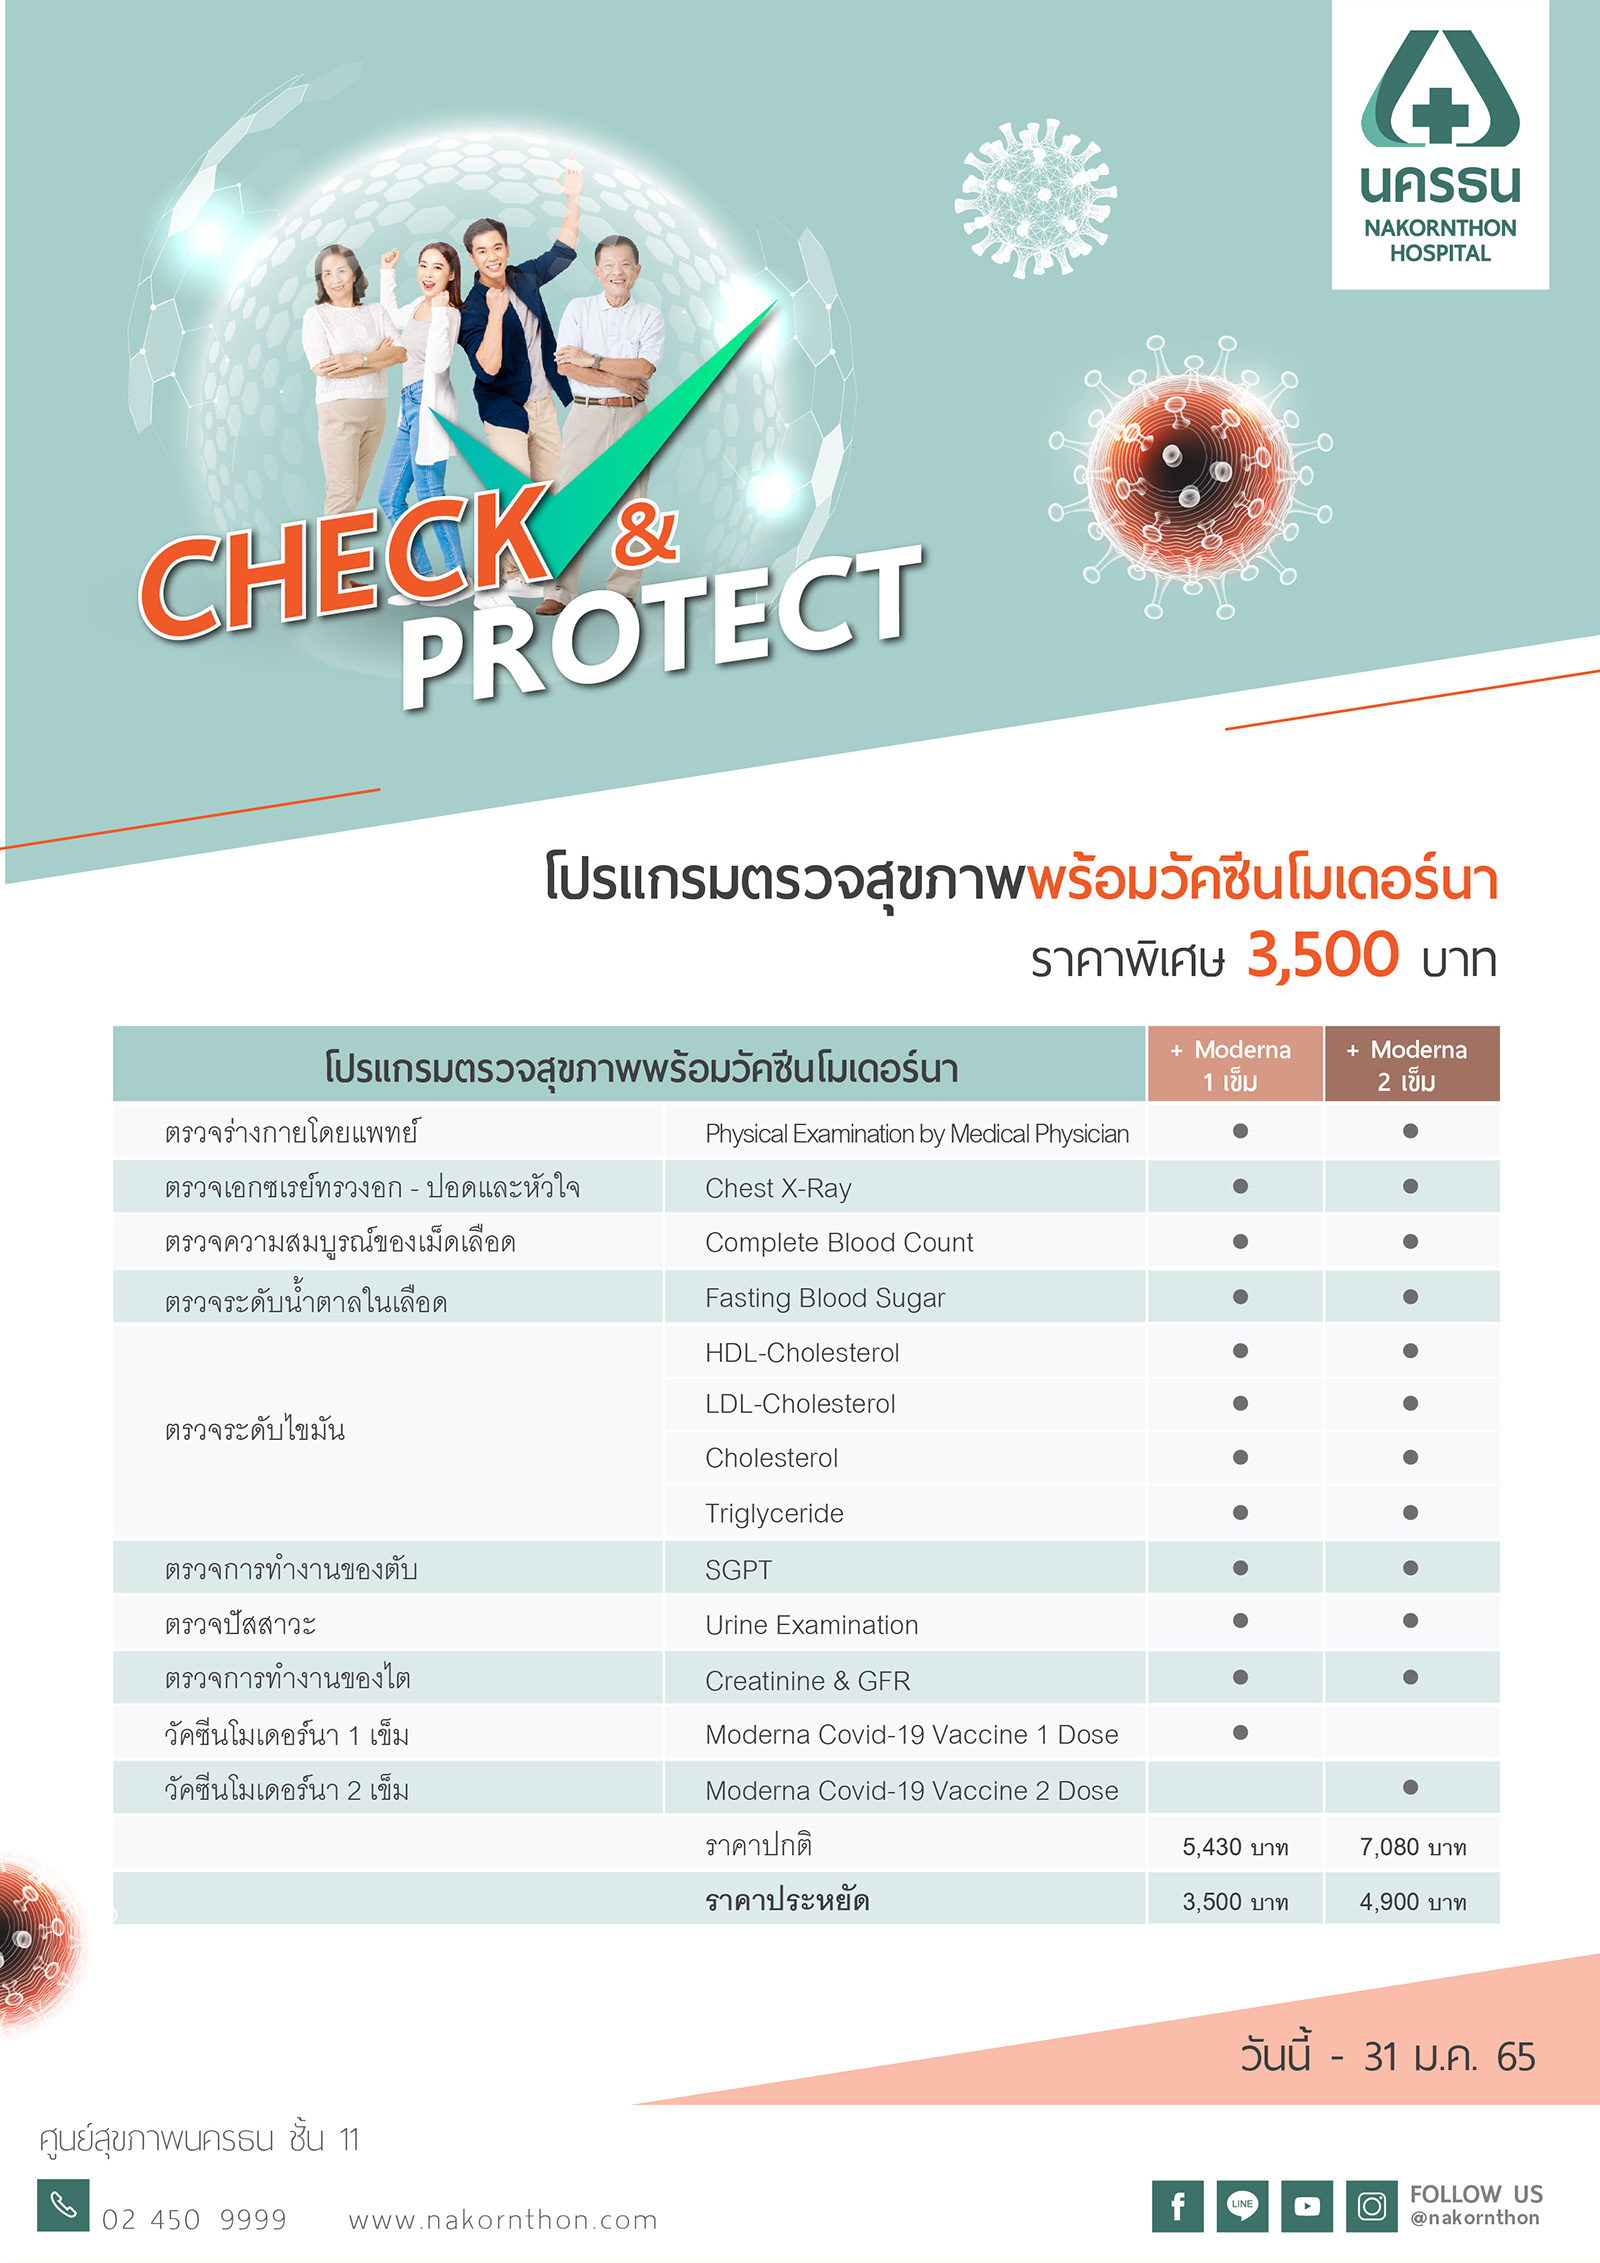 Check & Protect - โปรแกรมตรวจสุขภาพพร้อมวัคซีนโมเดอร์นา